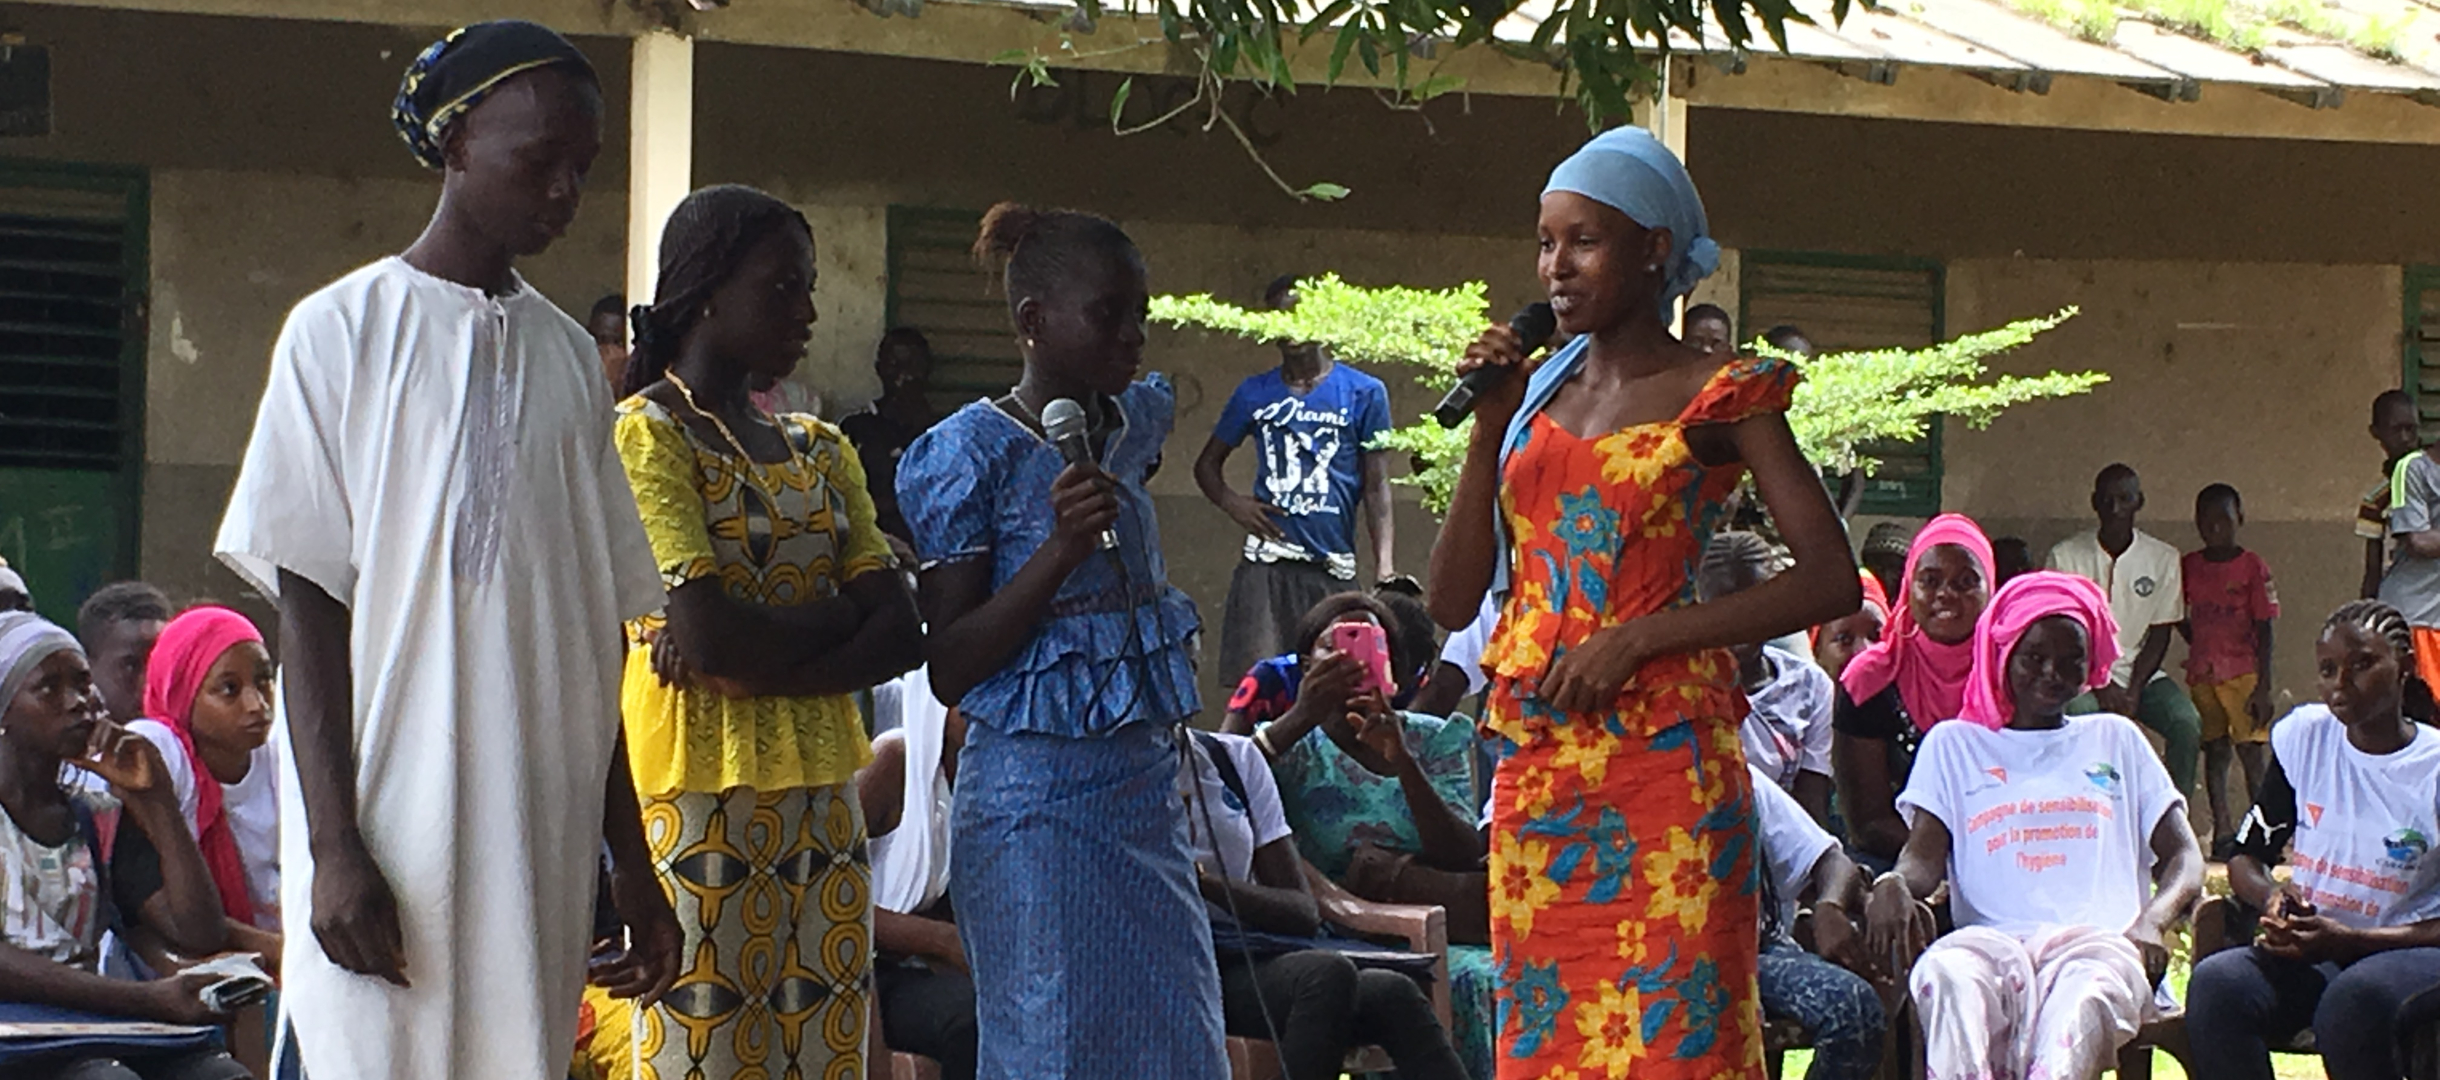 Theaterspiel von Mädchen im Senegal zu Beschneidung und Frühheirat